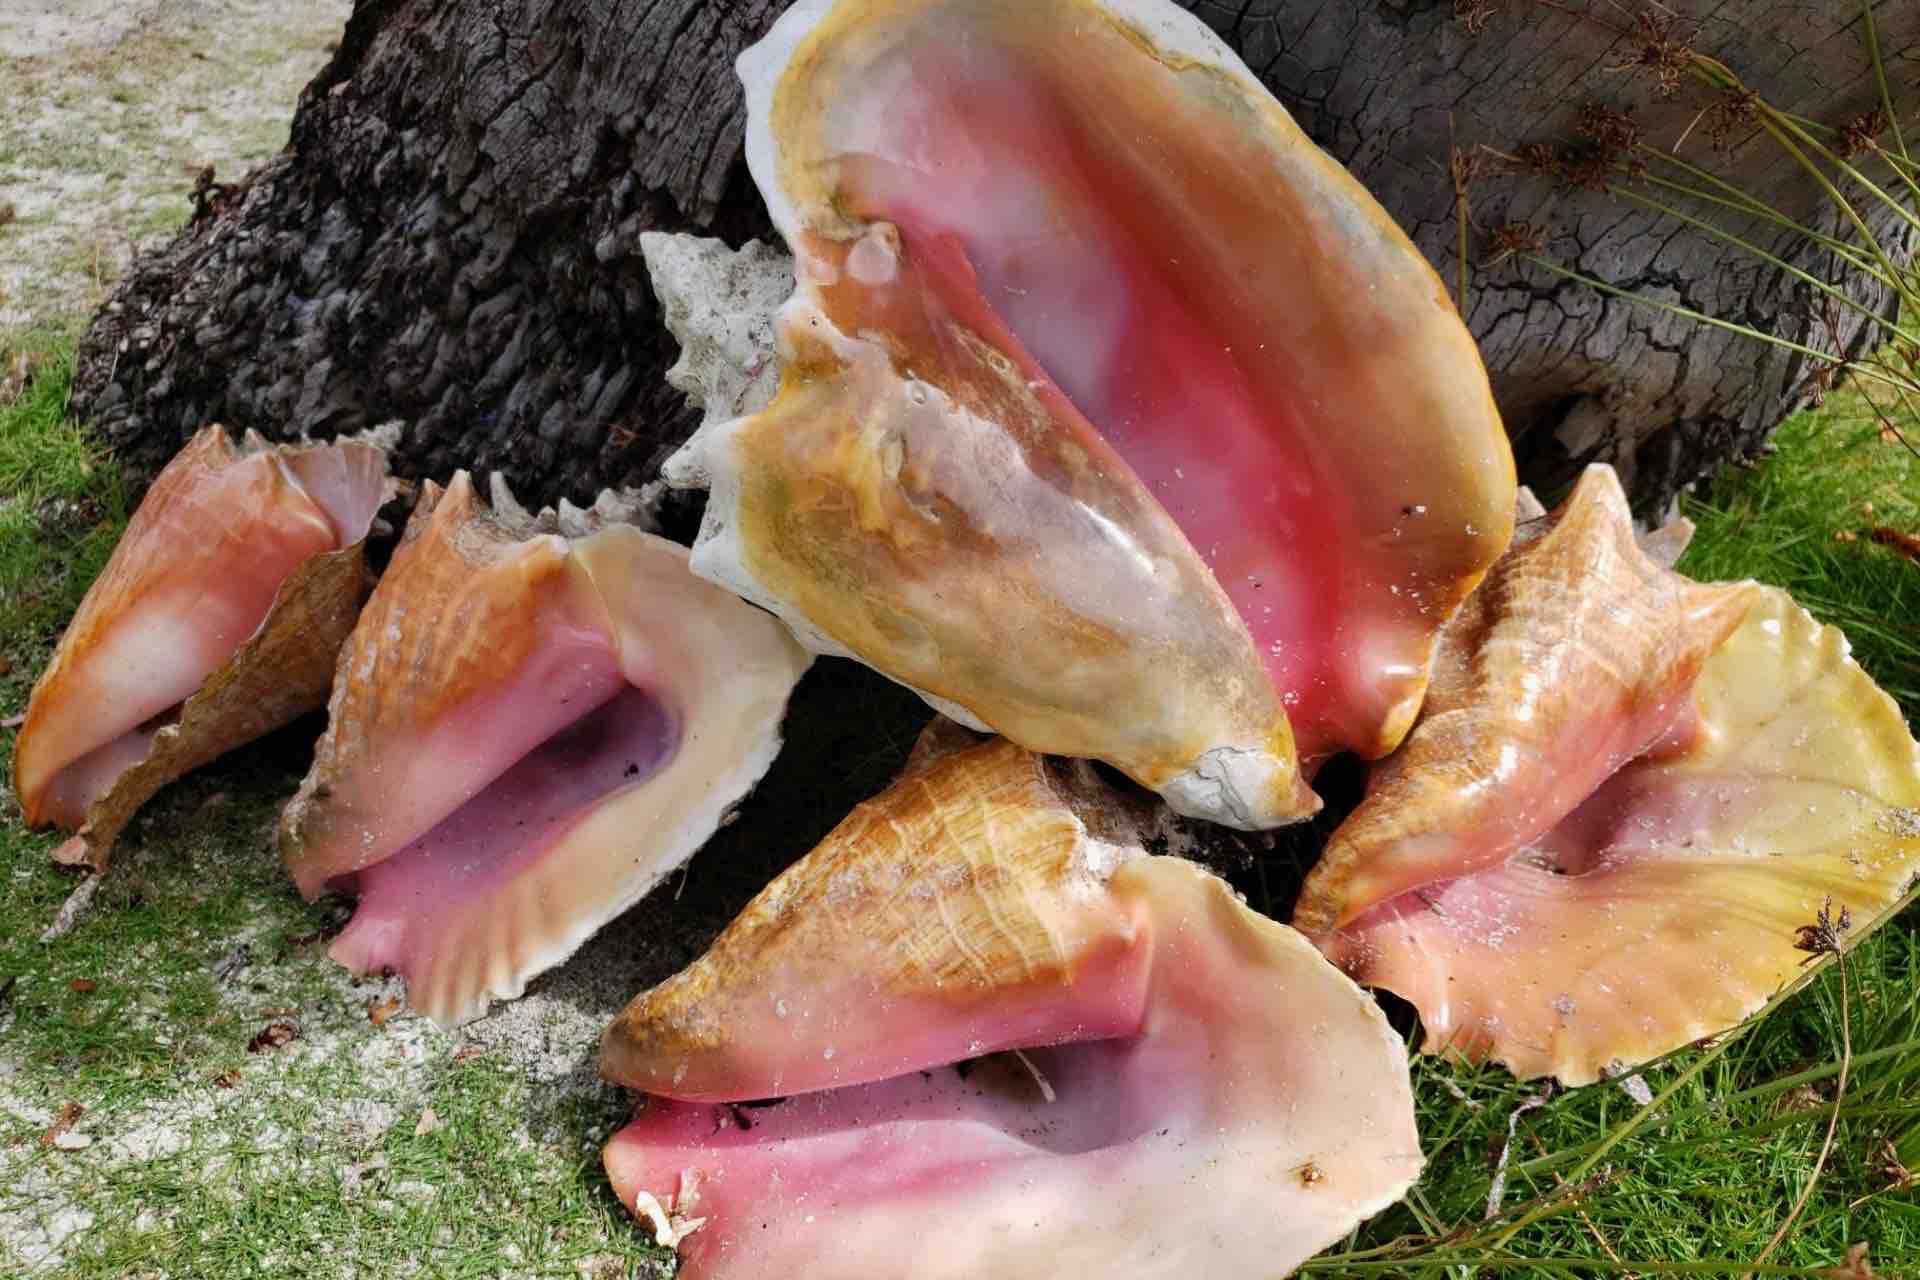 San Blas islands conch shells